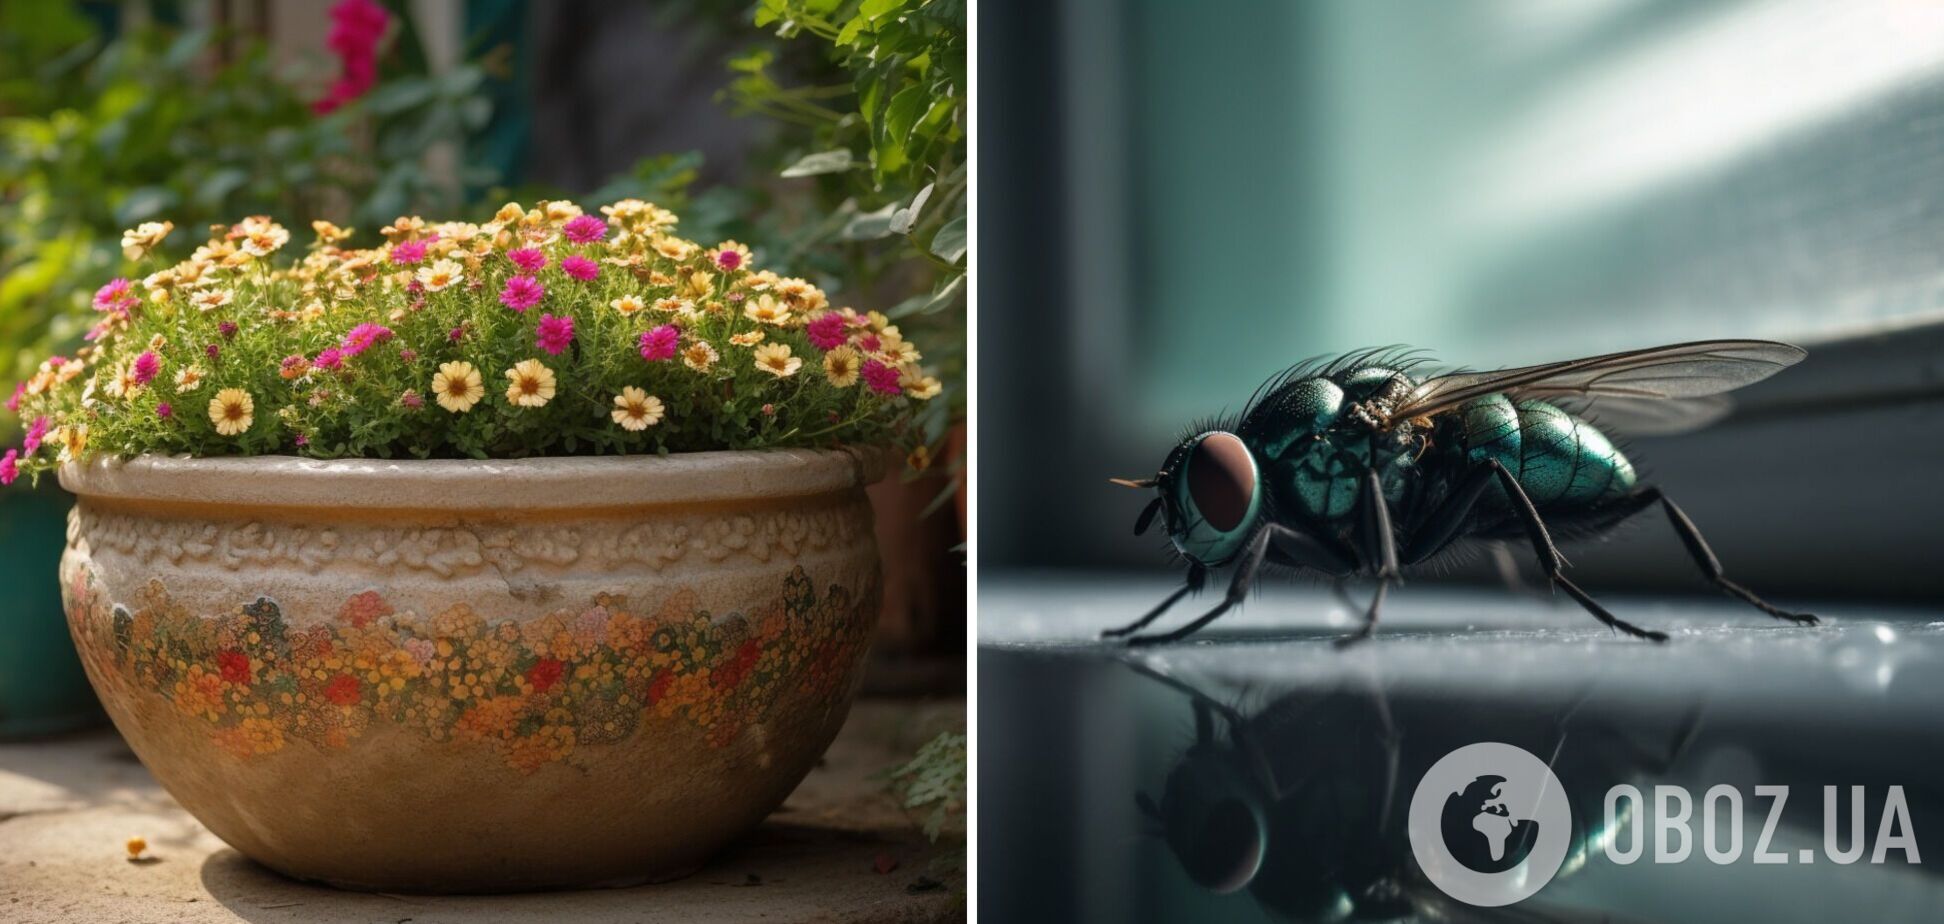 Як легко позбутися мух у житлі: запахи, які відлякують комах